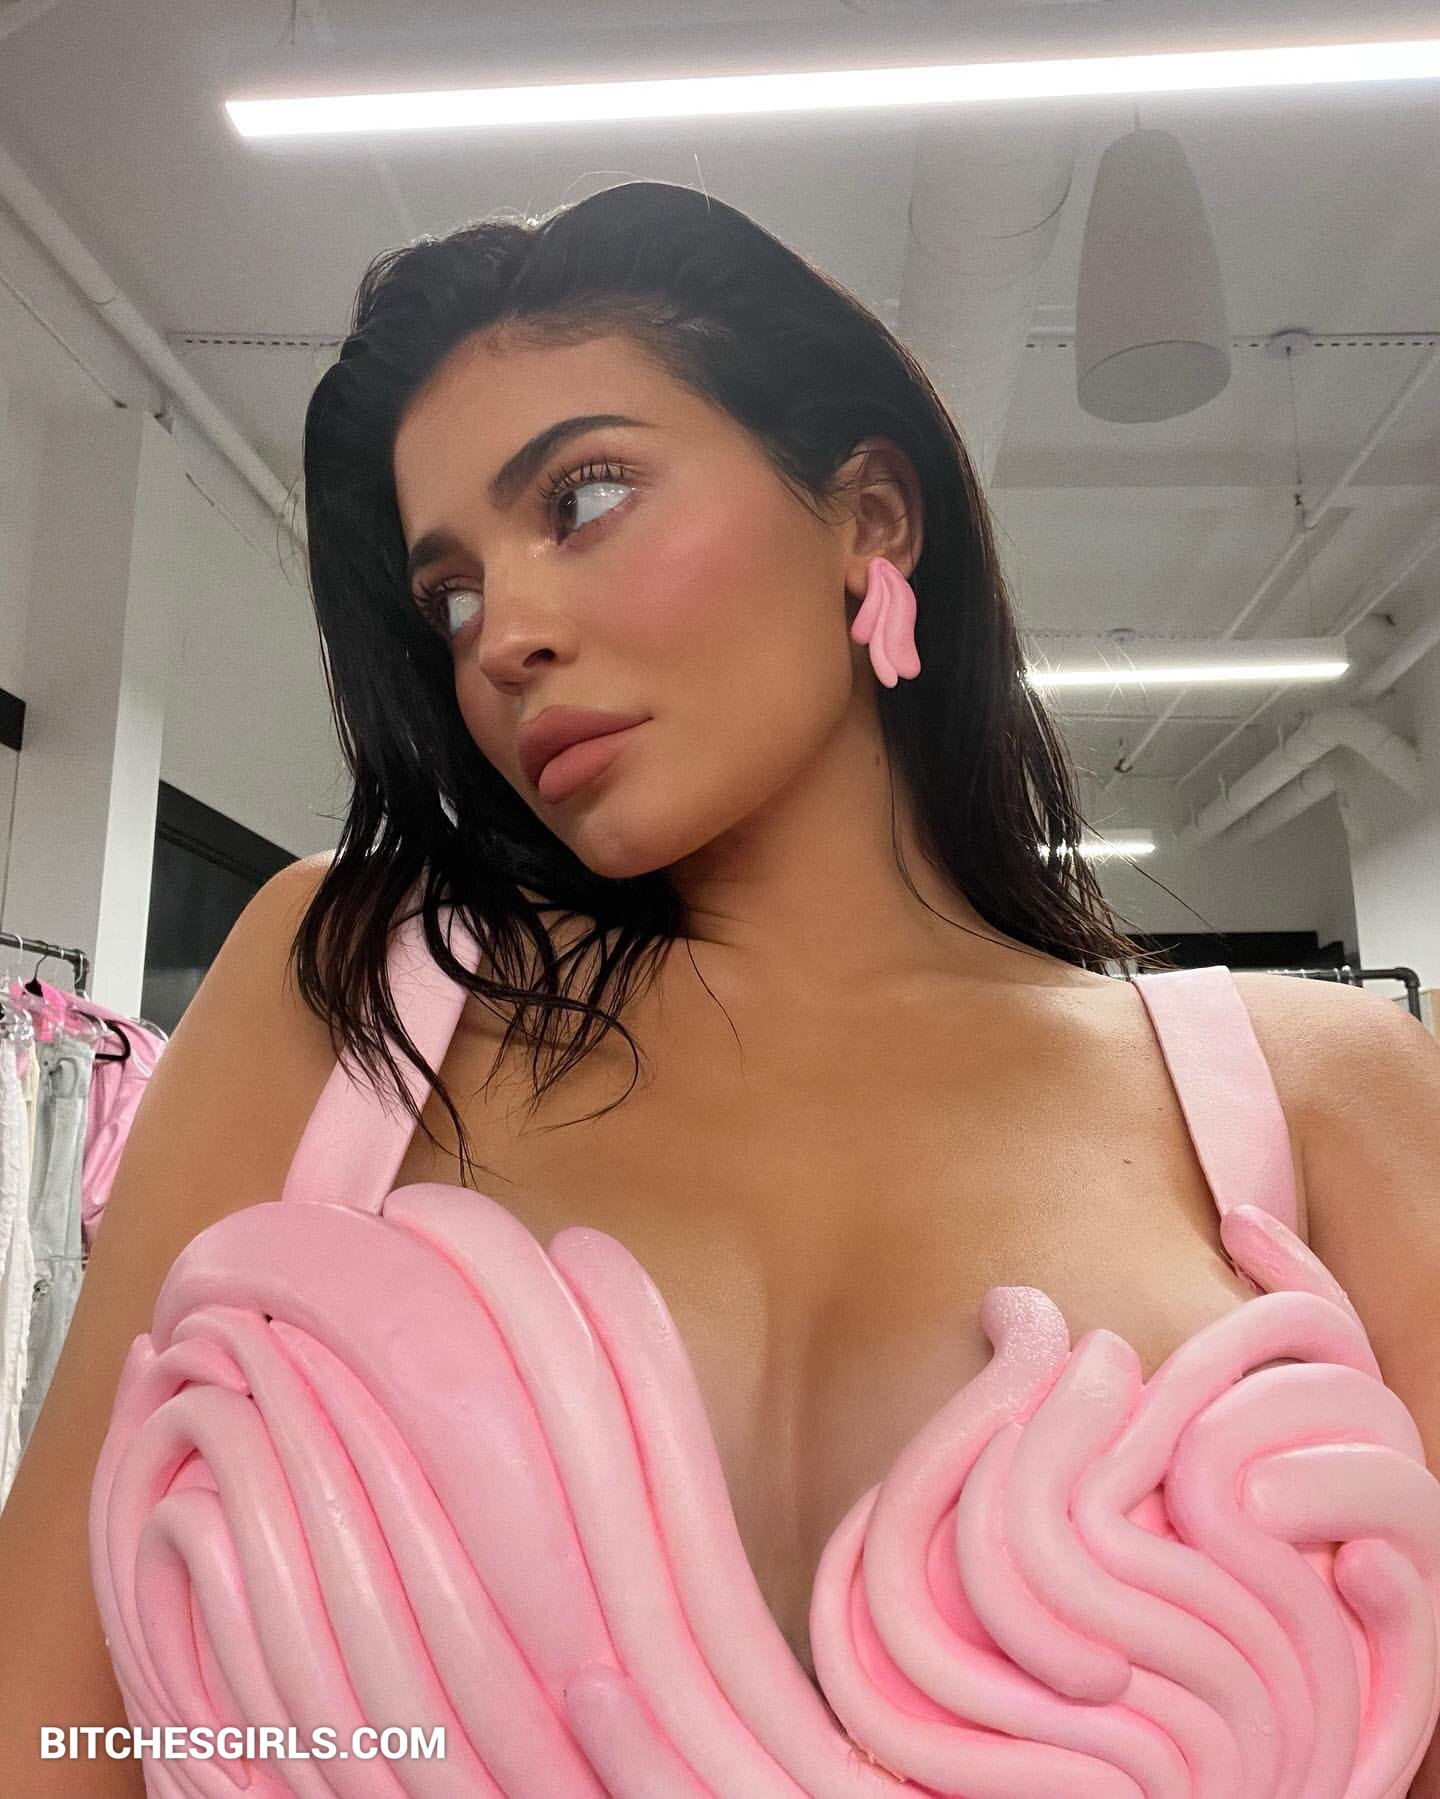 Kylie jenner porn leaked